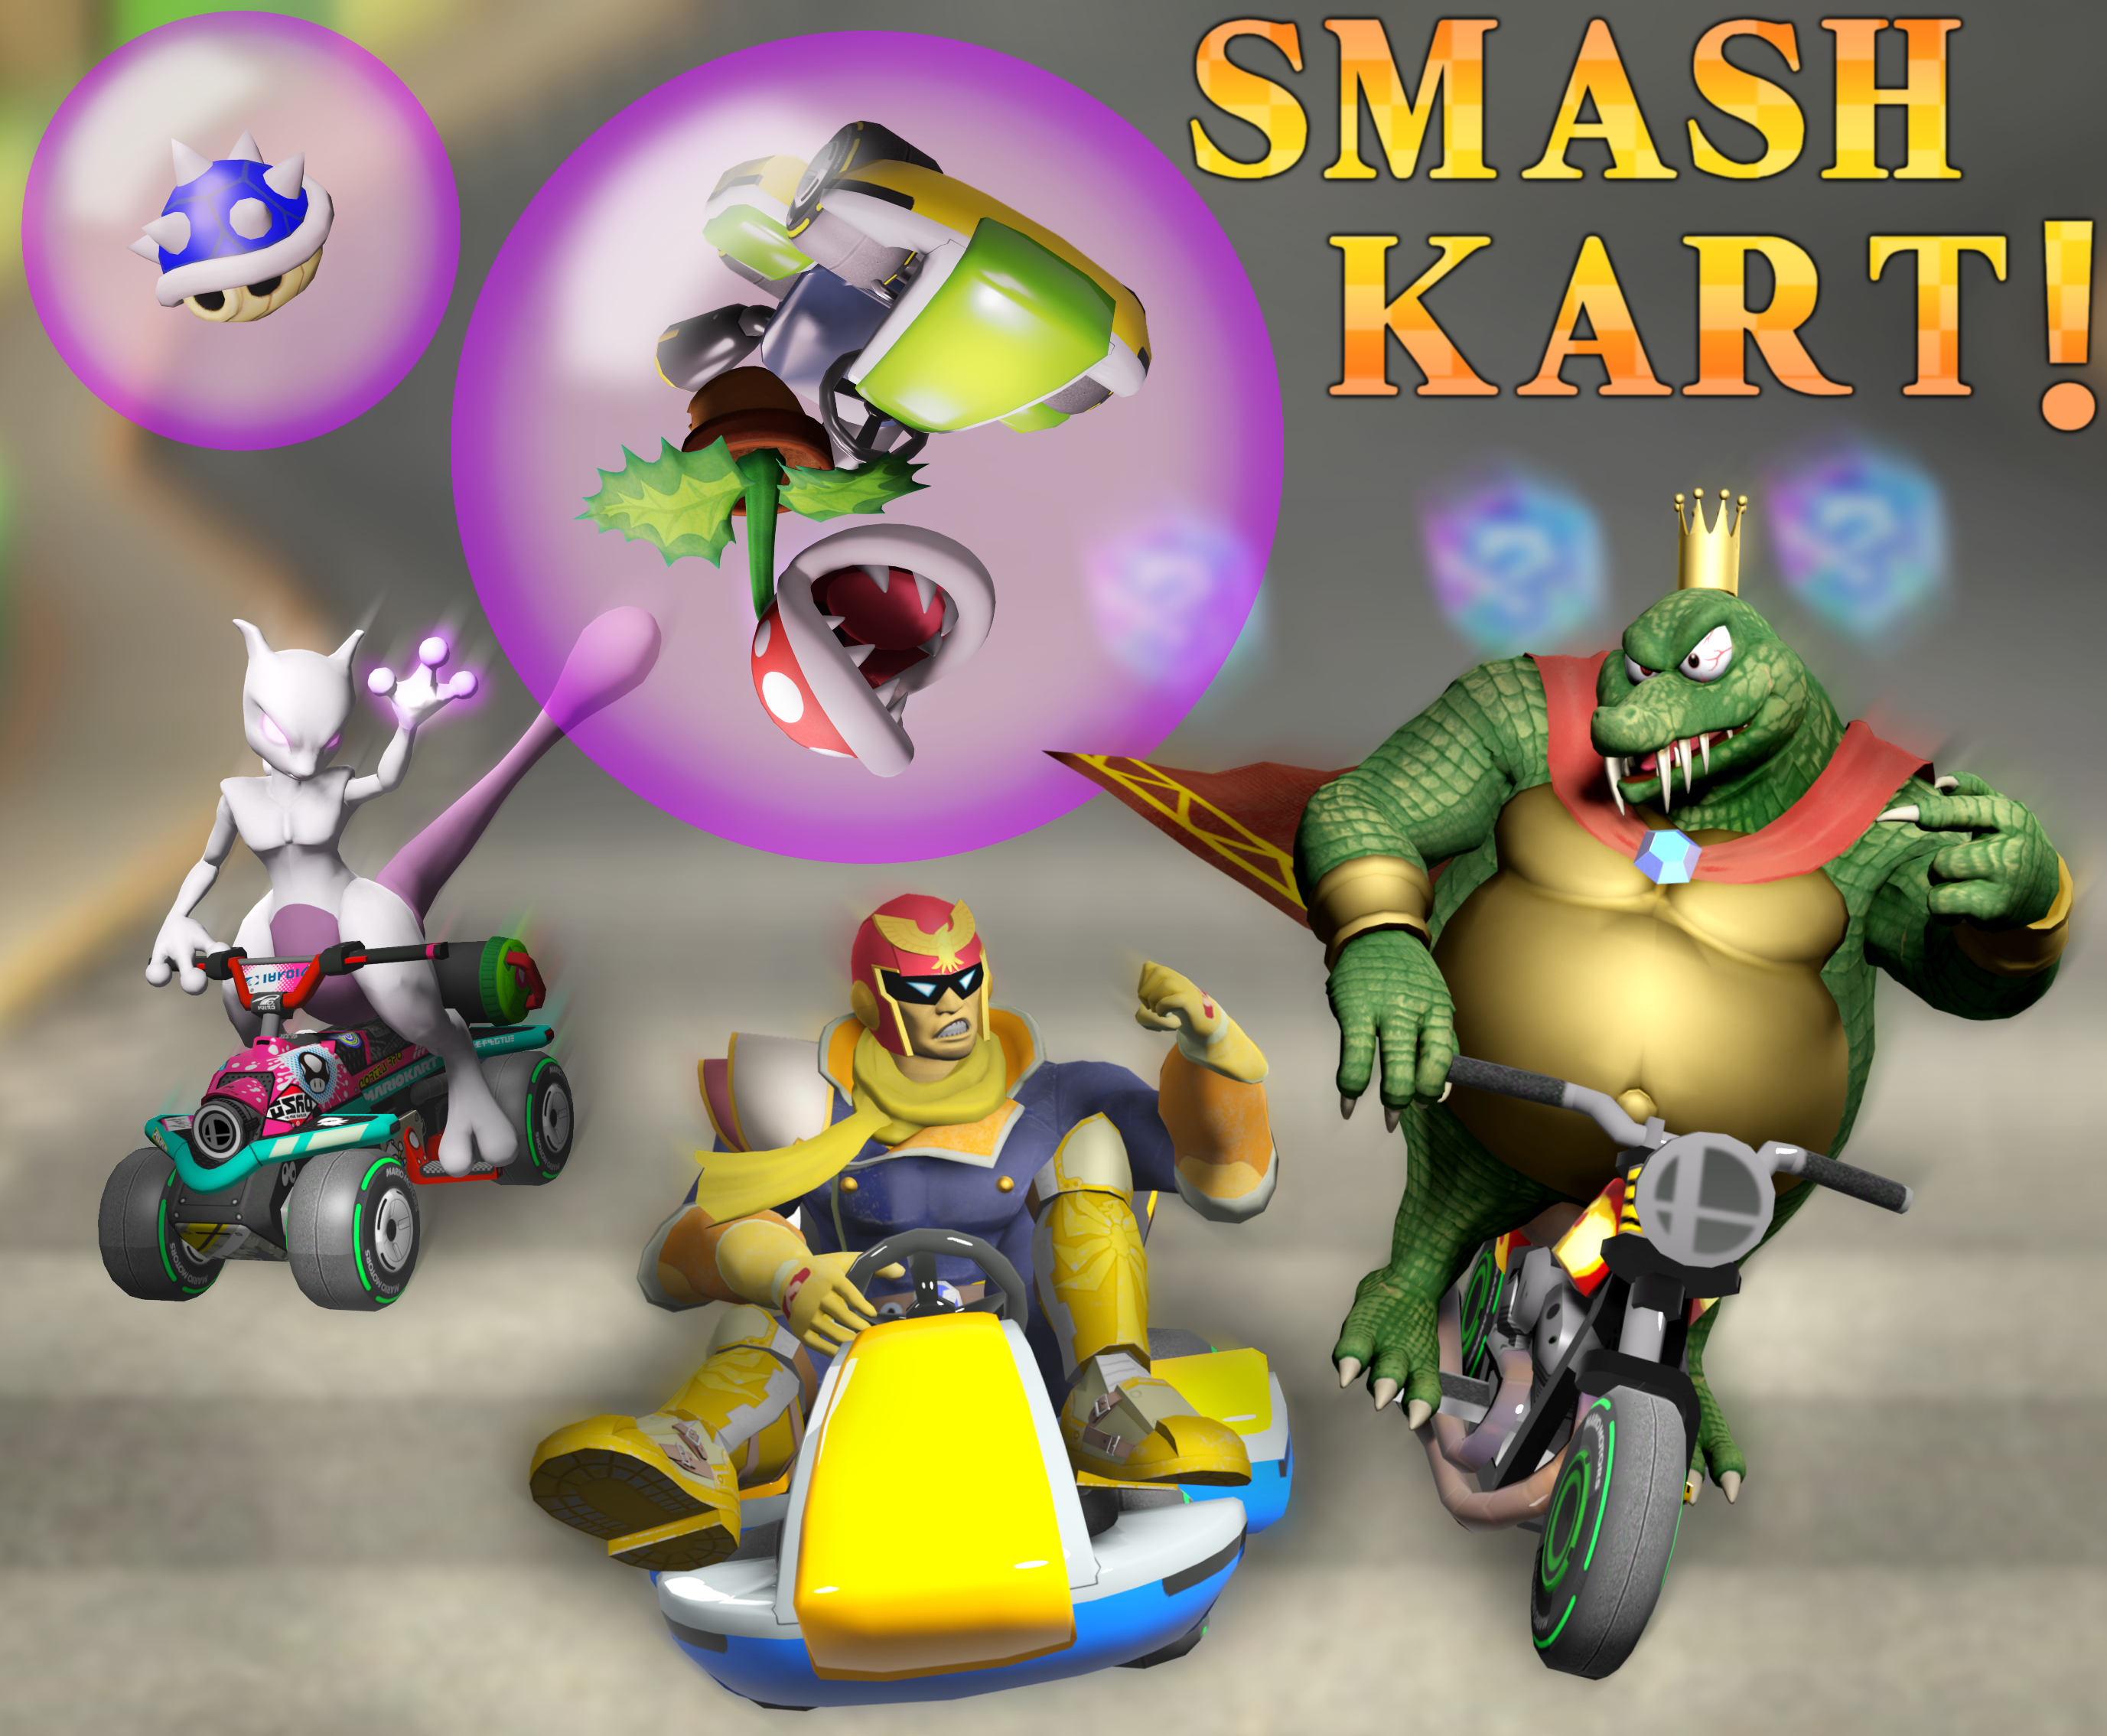 3D Render: Smash Kart by MegaMario2001 on DeviantArt